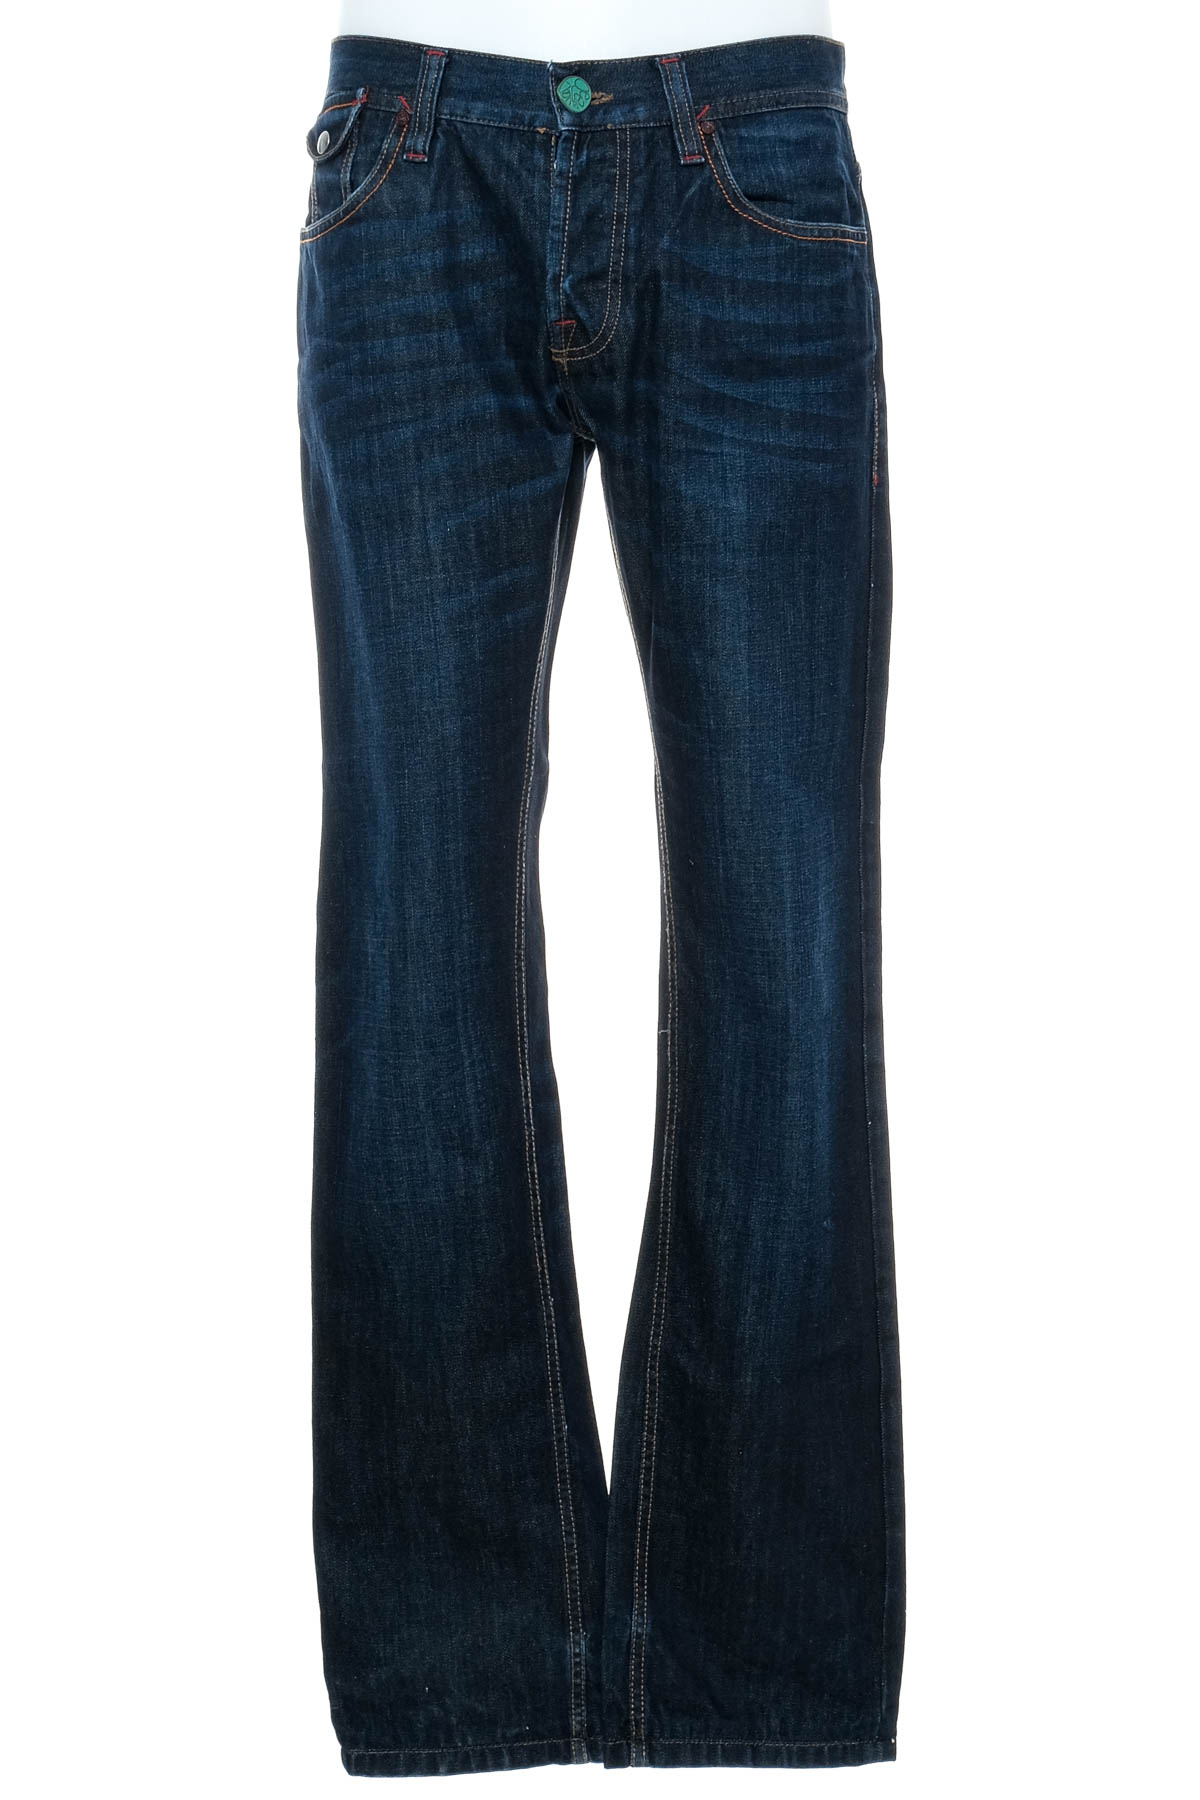 Men's jeans - Desigual - 0